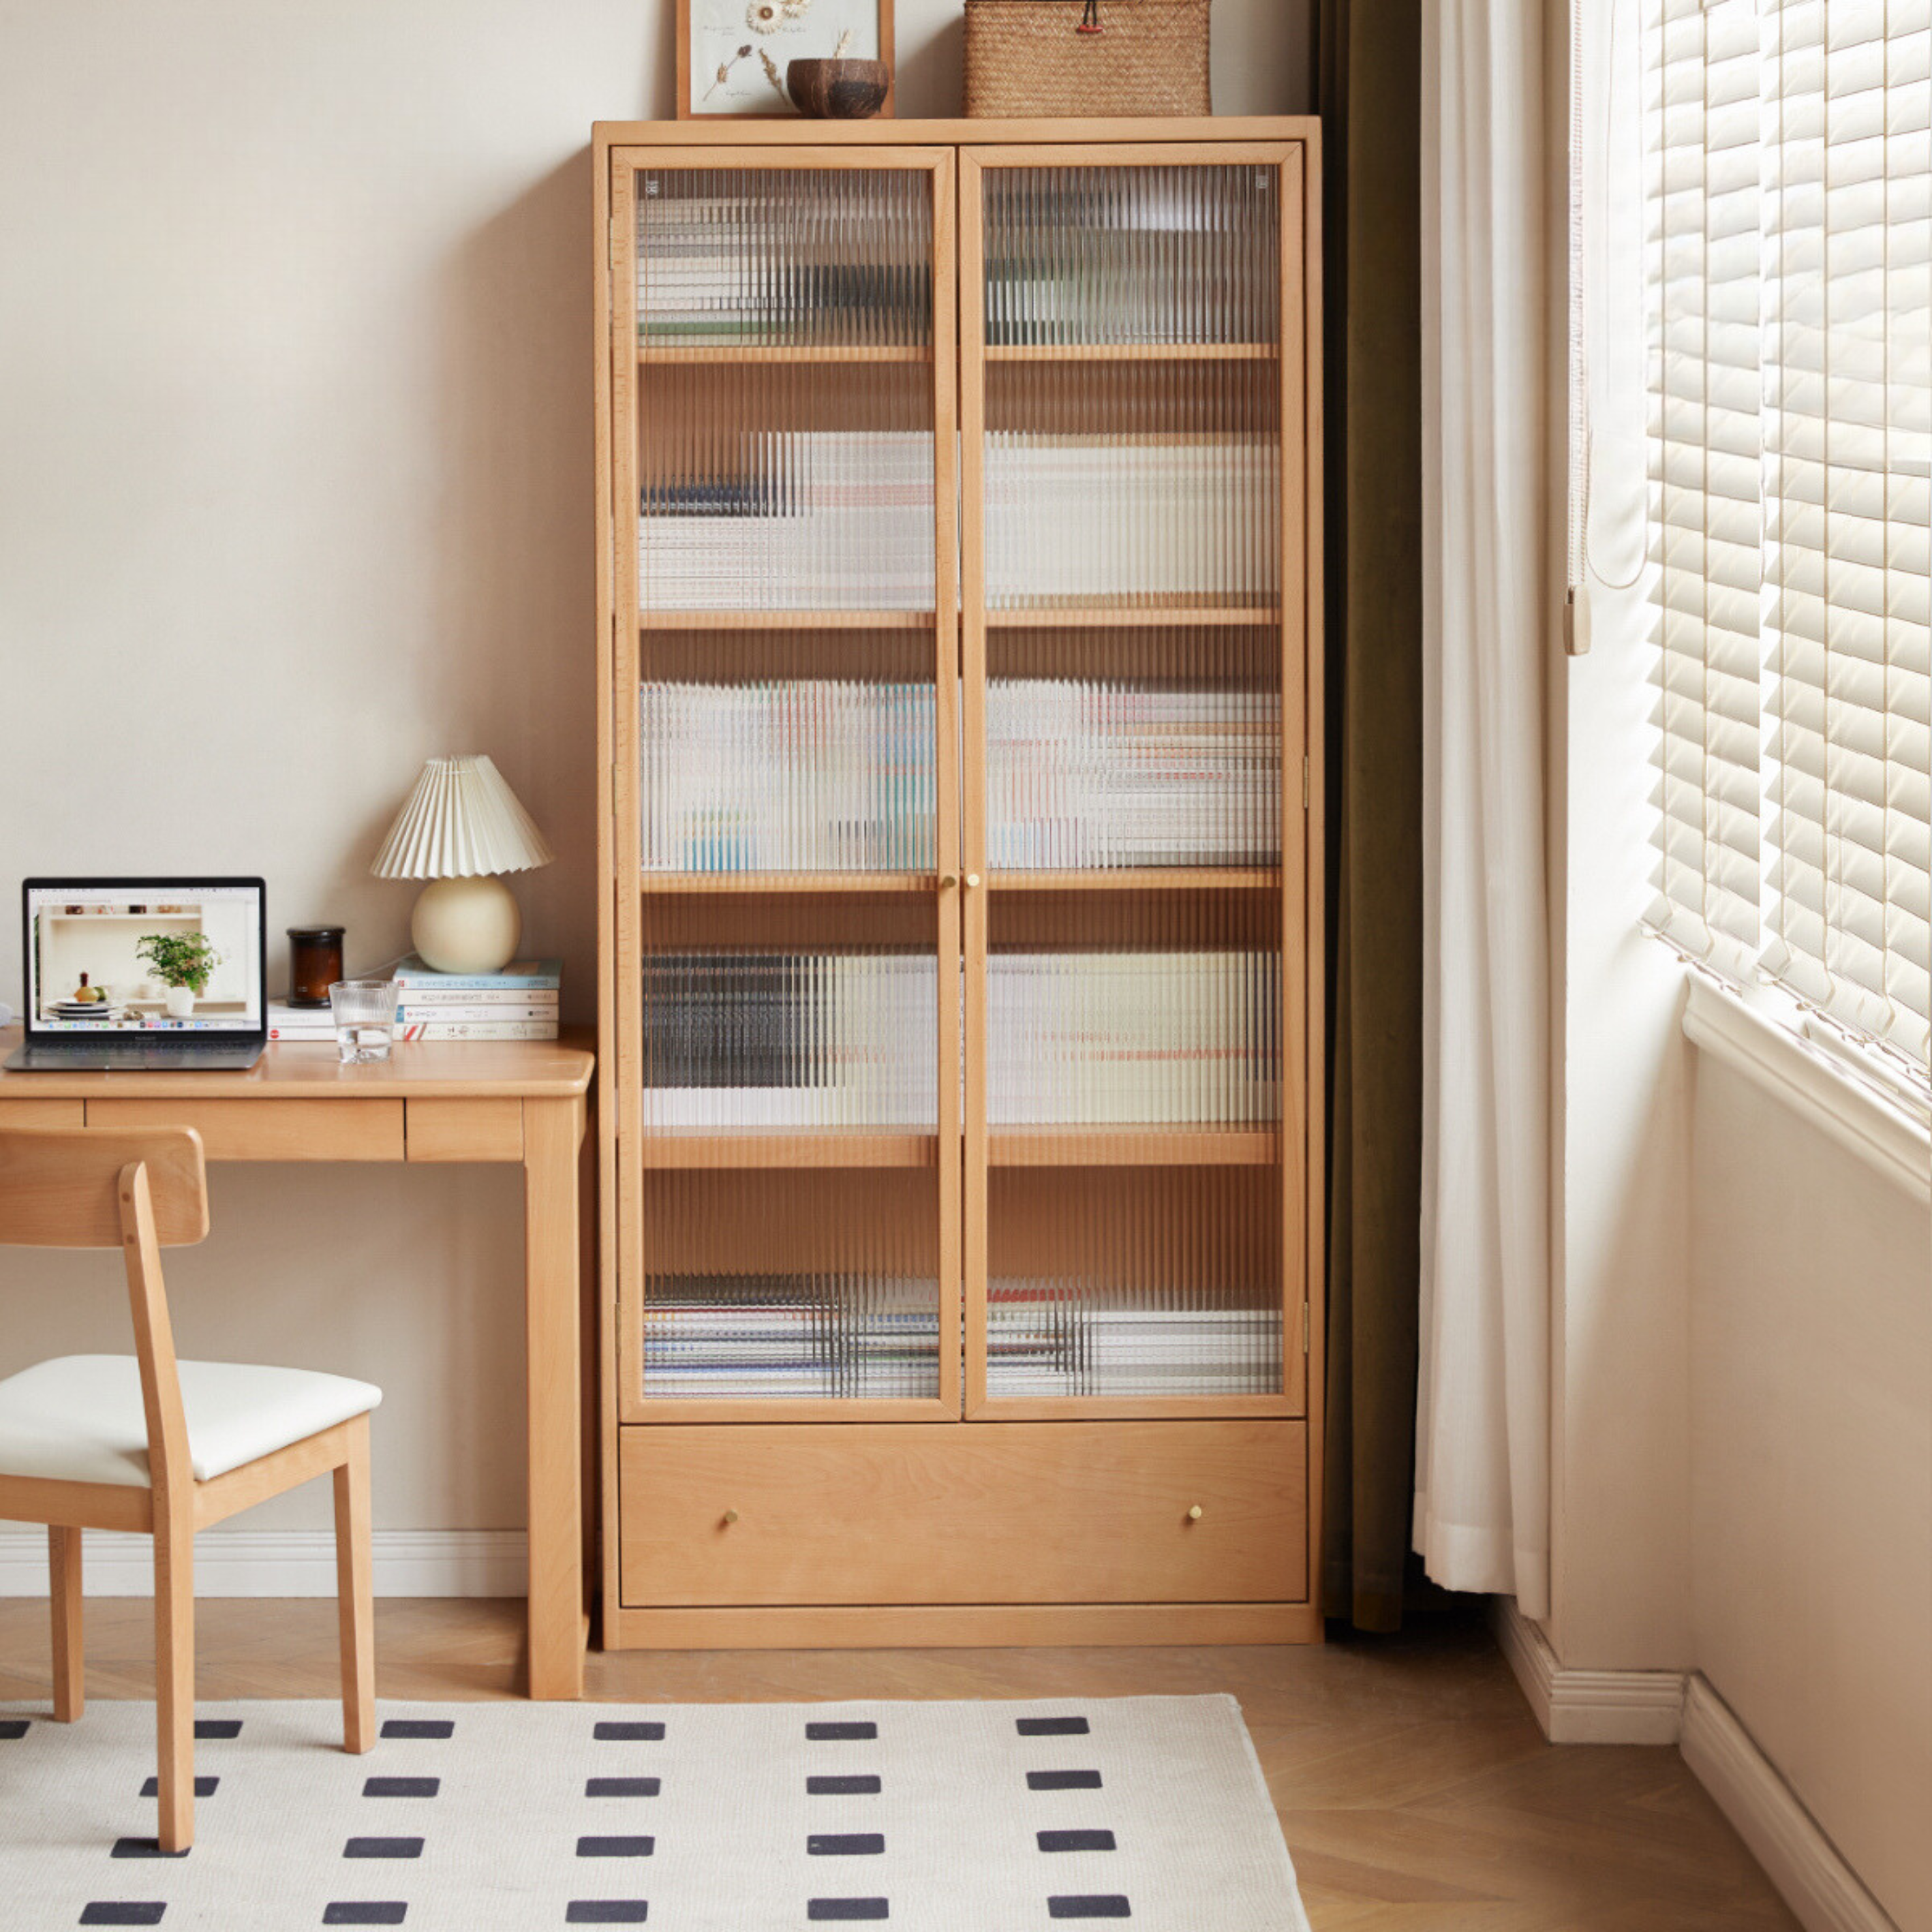 European Beech solid wood bookshelf, glass door storage display cabinet"-